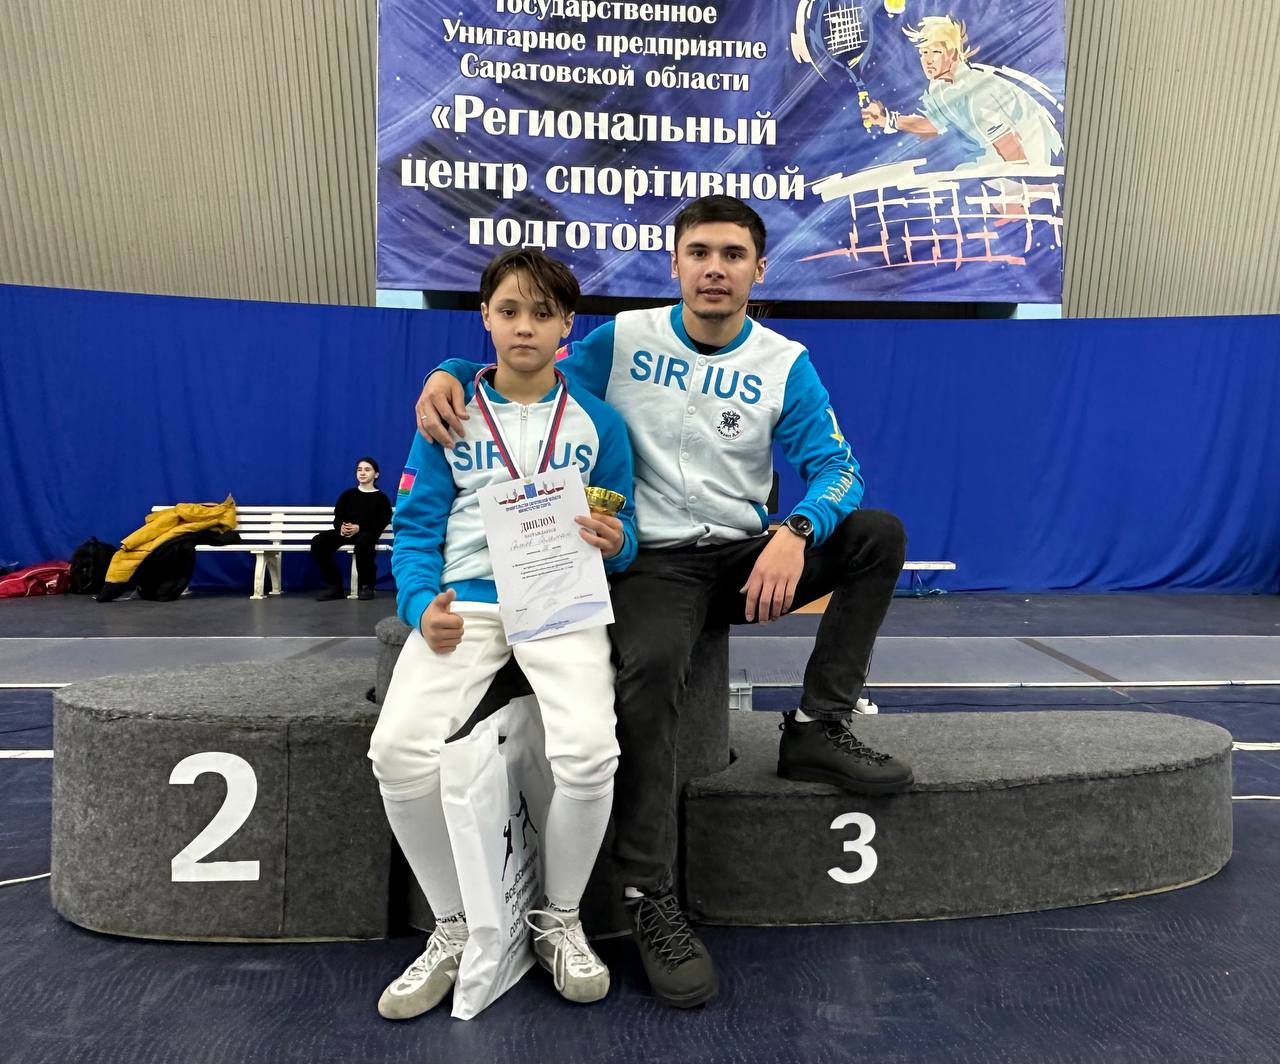 Салиев Сальман - бронзовый призёр межрегионального турнира на призы олимпийских игр Саратовской области!